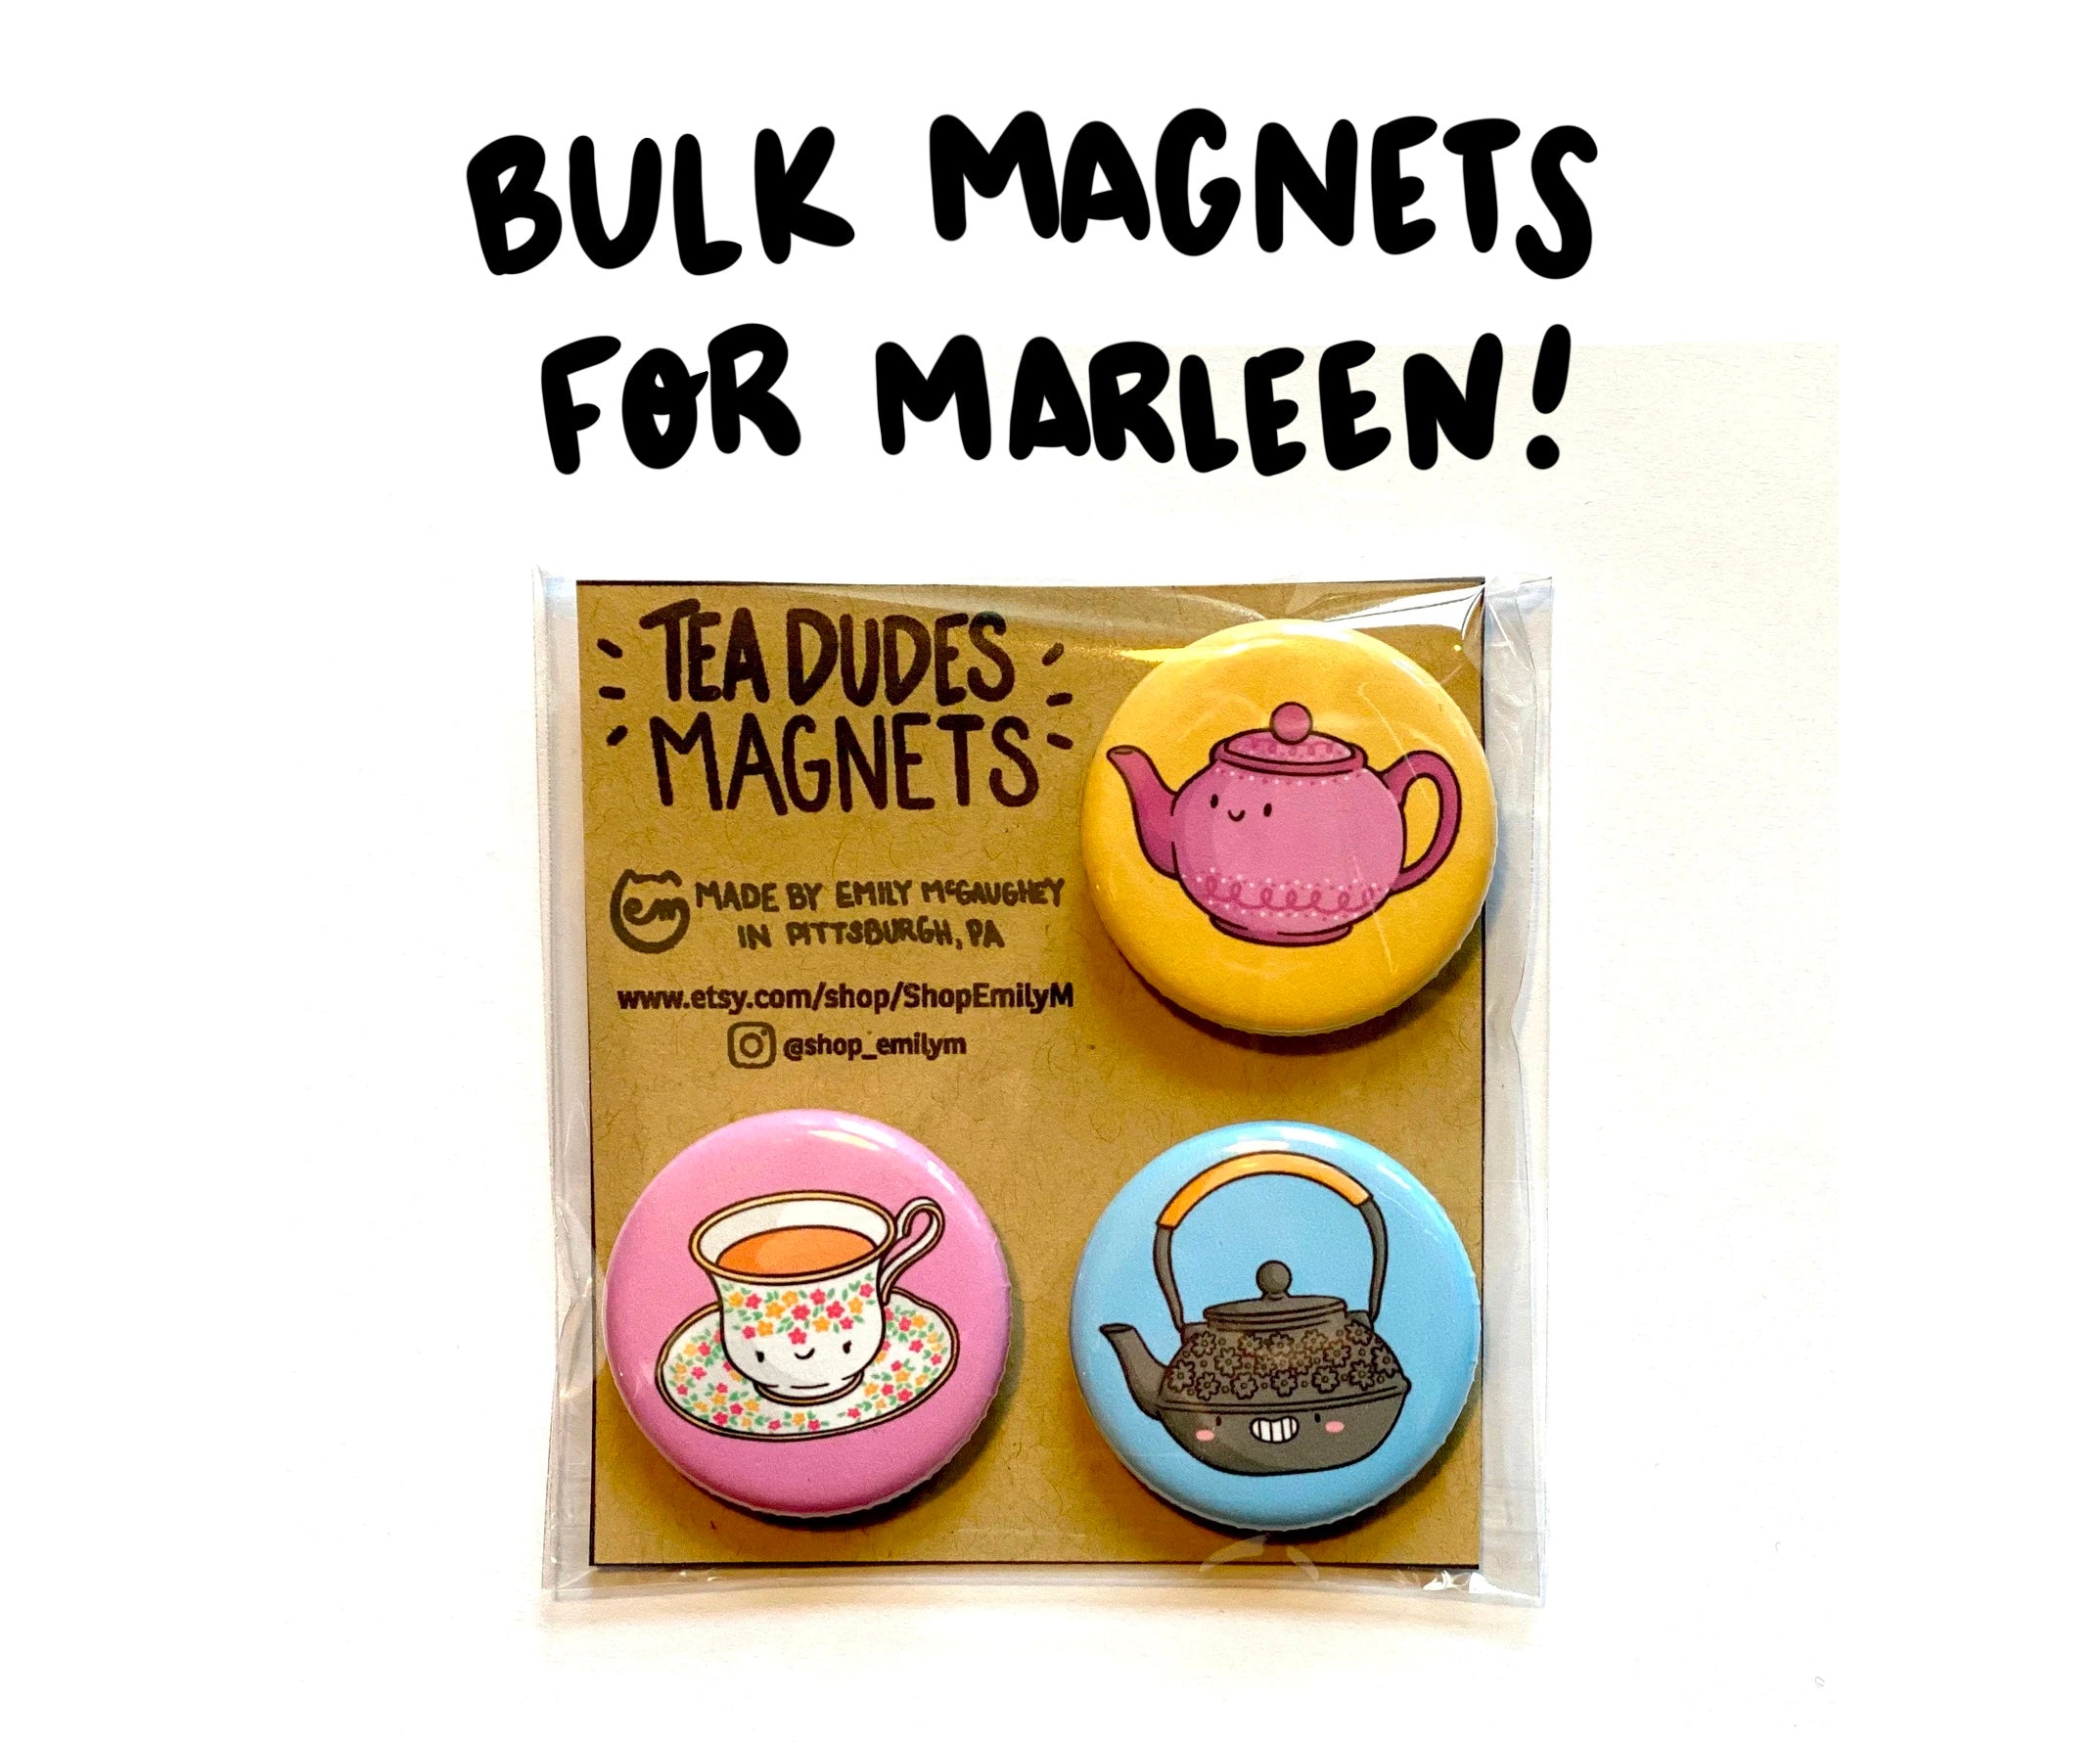 Bulk Magnets for Marleen!